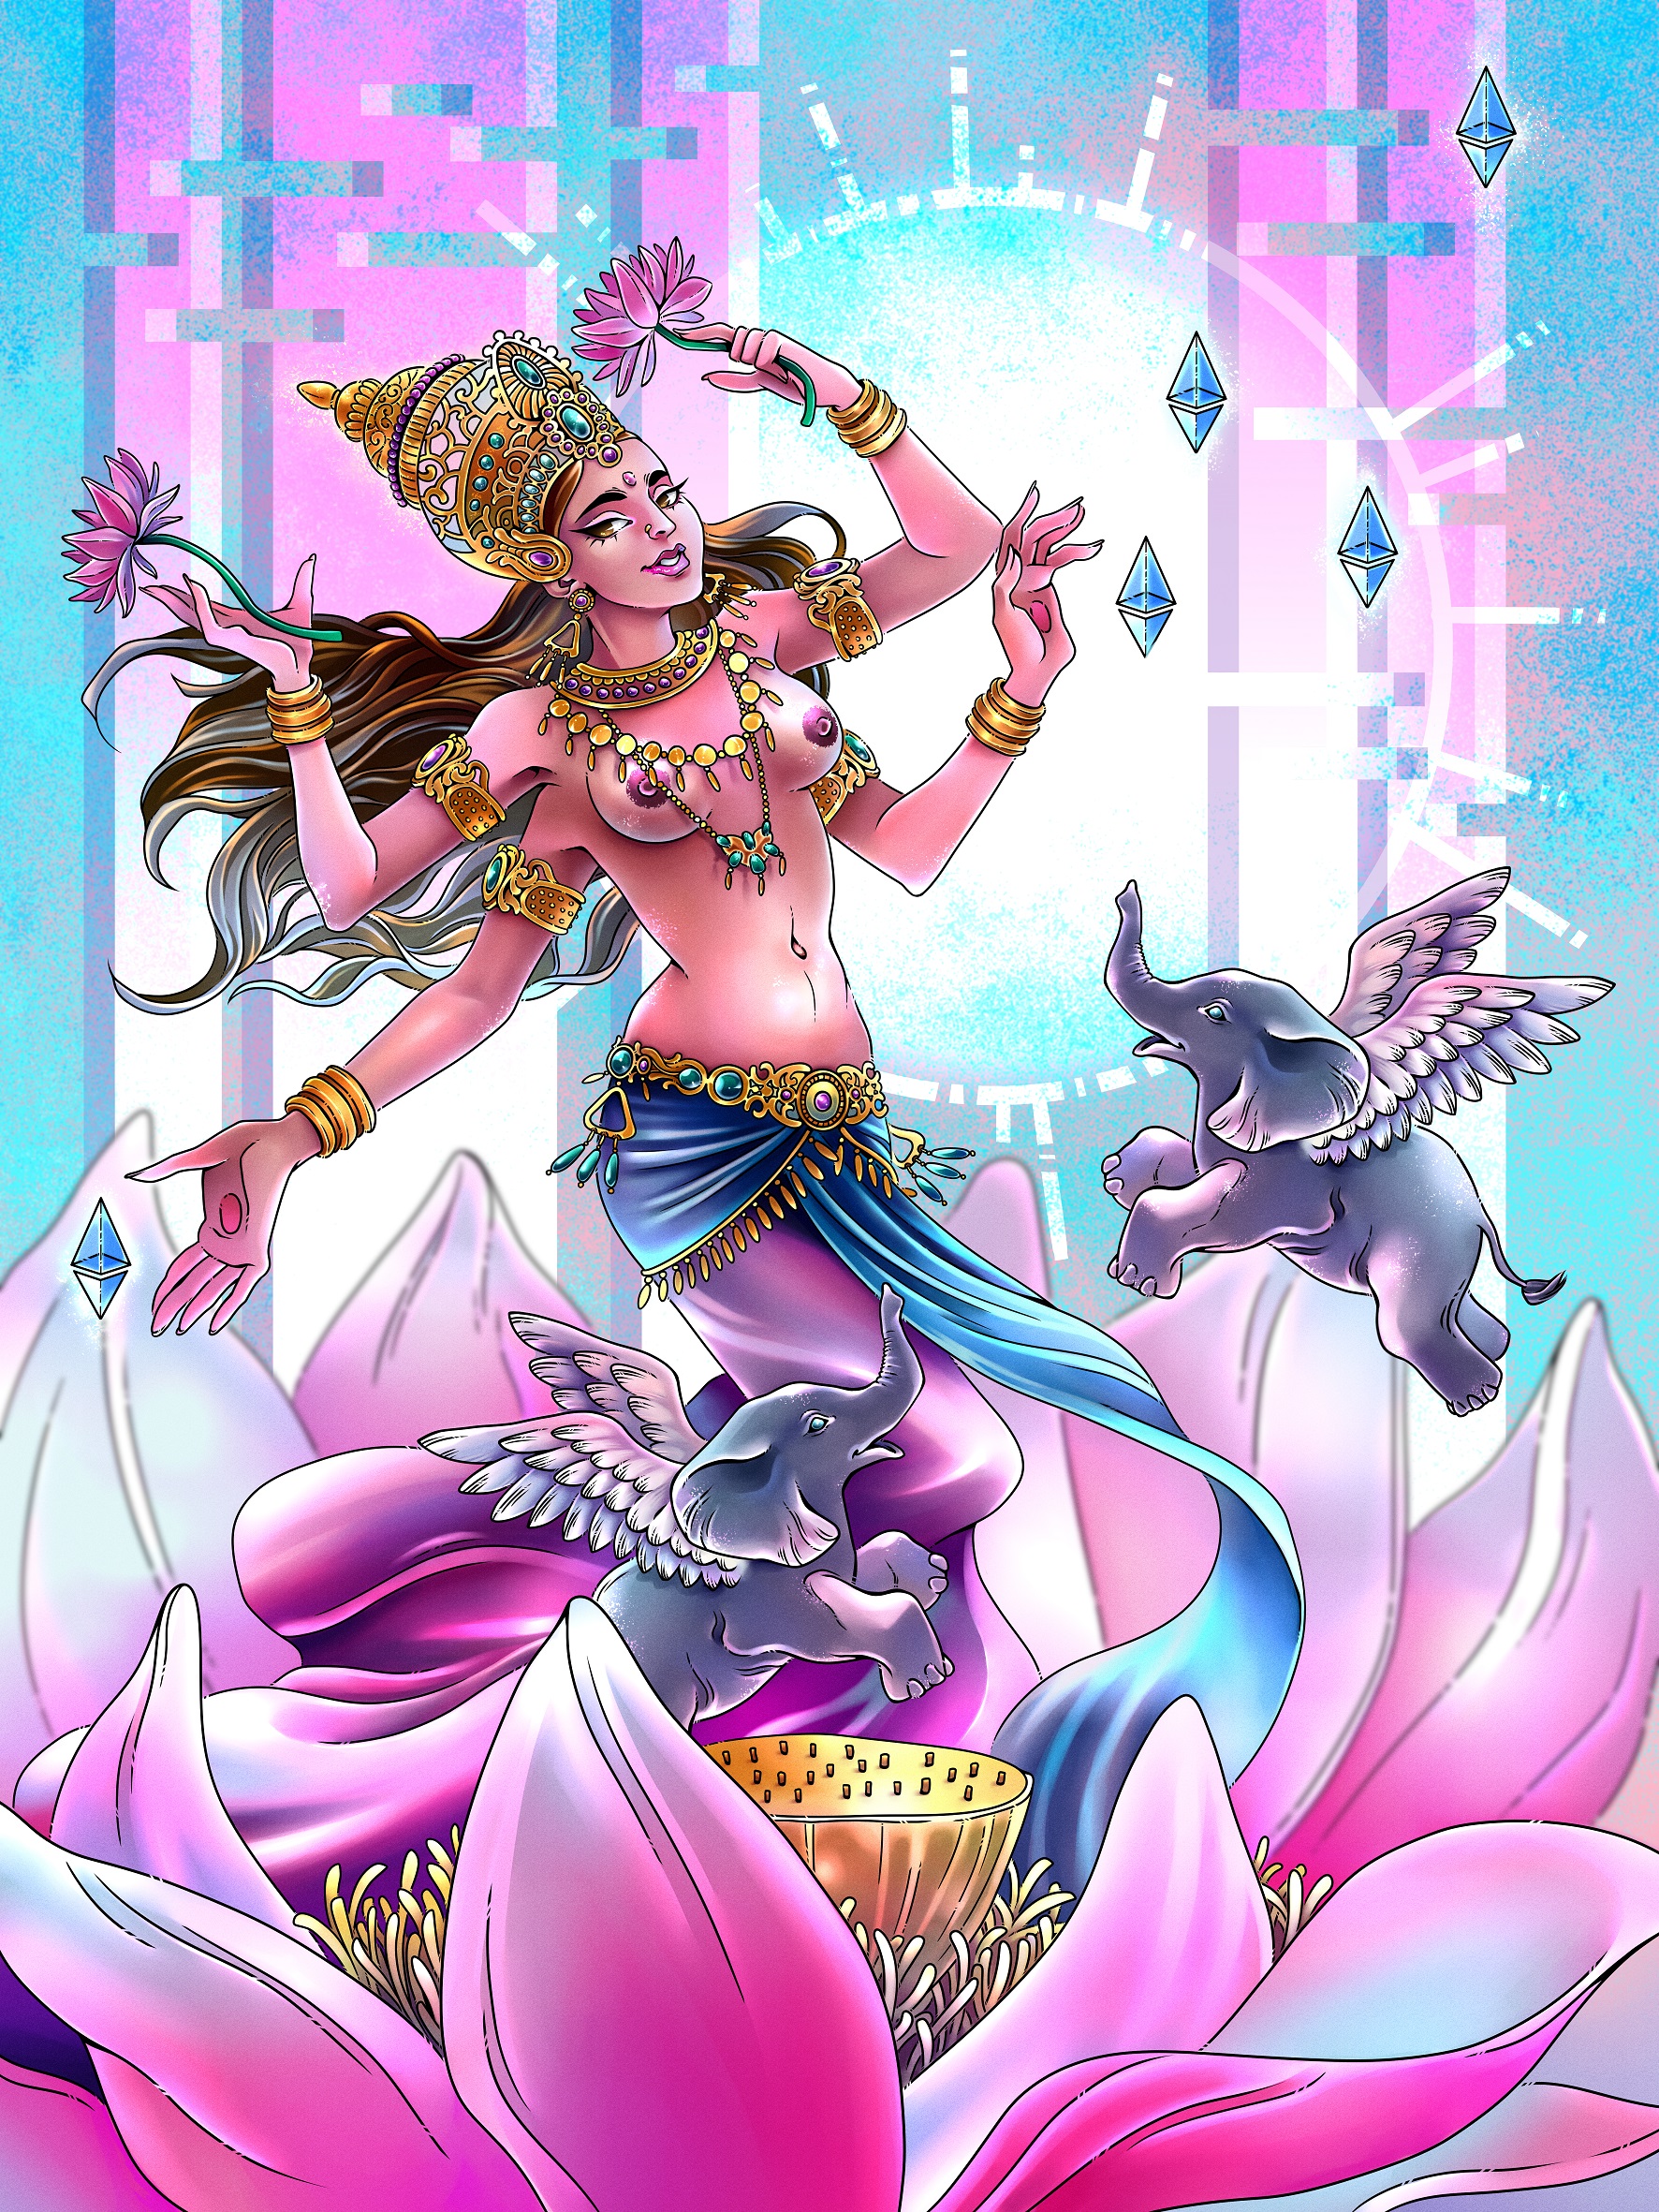 Lakshmi the metaversion